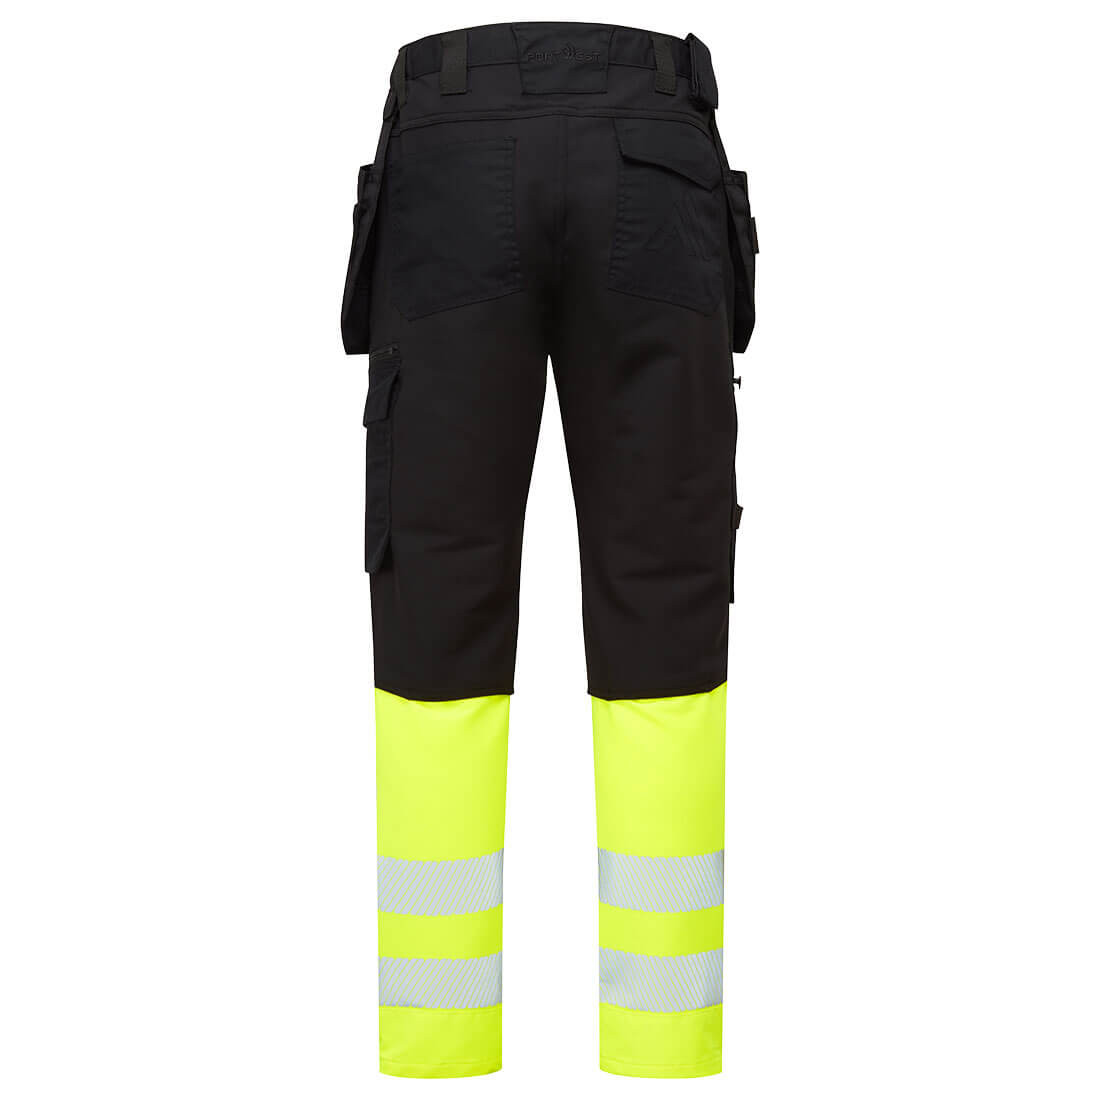 Pantalón Craft DX4 de alta visibilidad, clase 1 - Ropa de protección